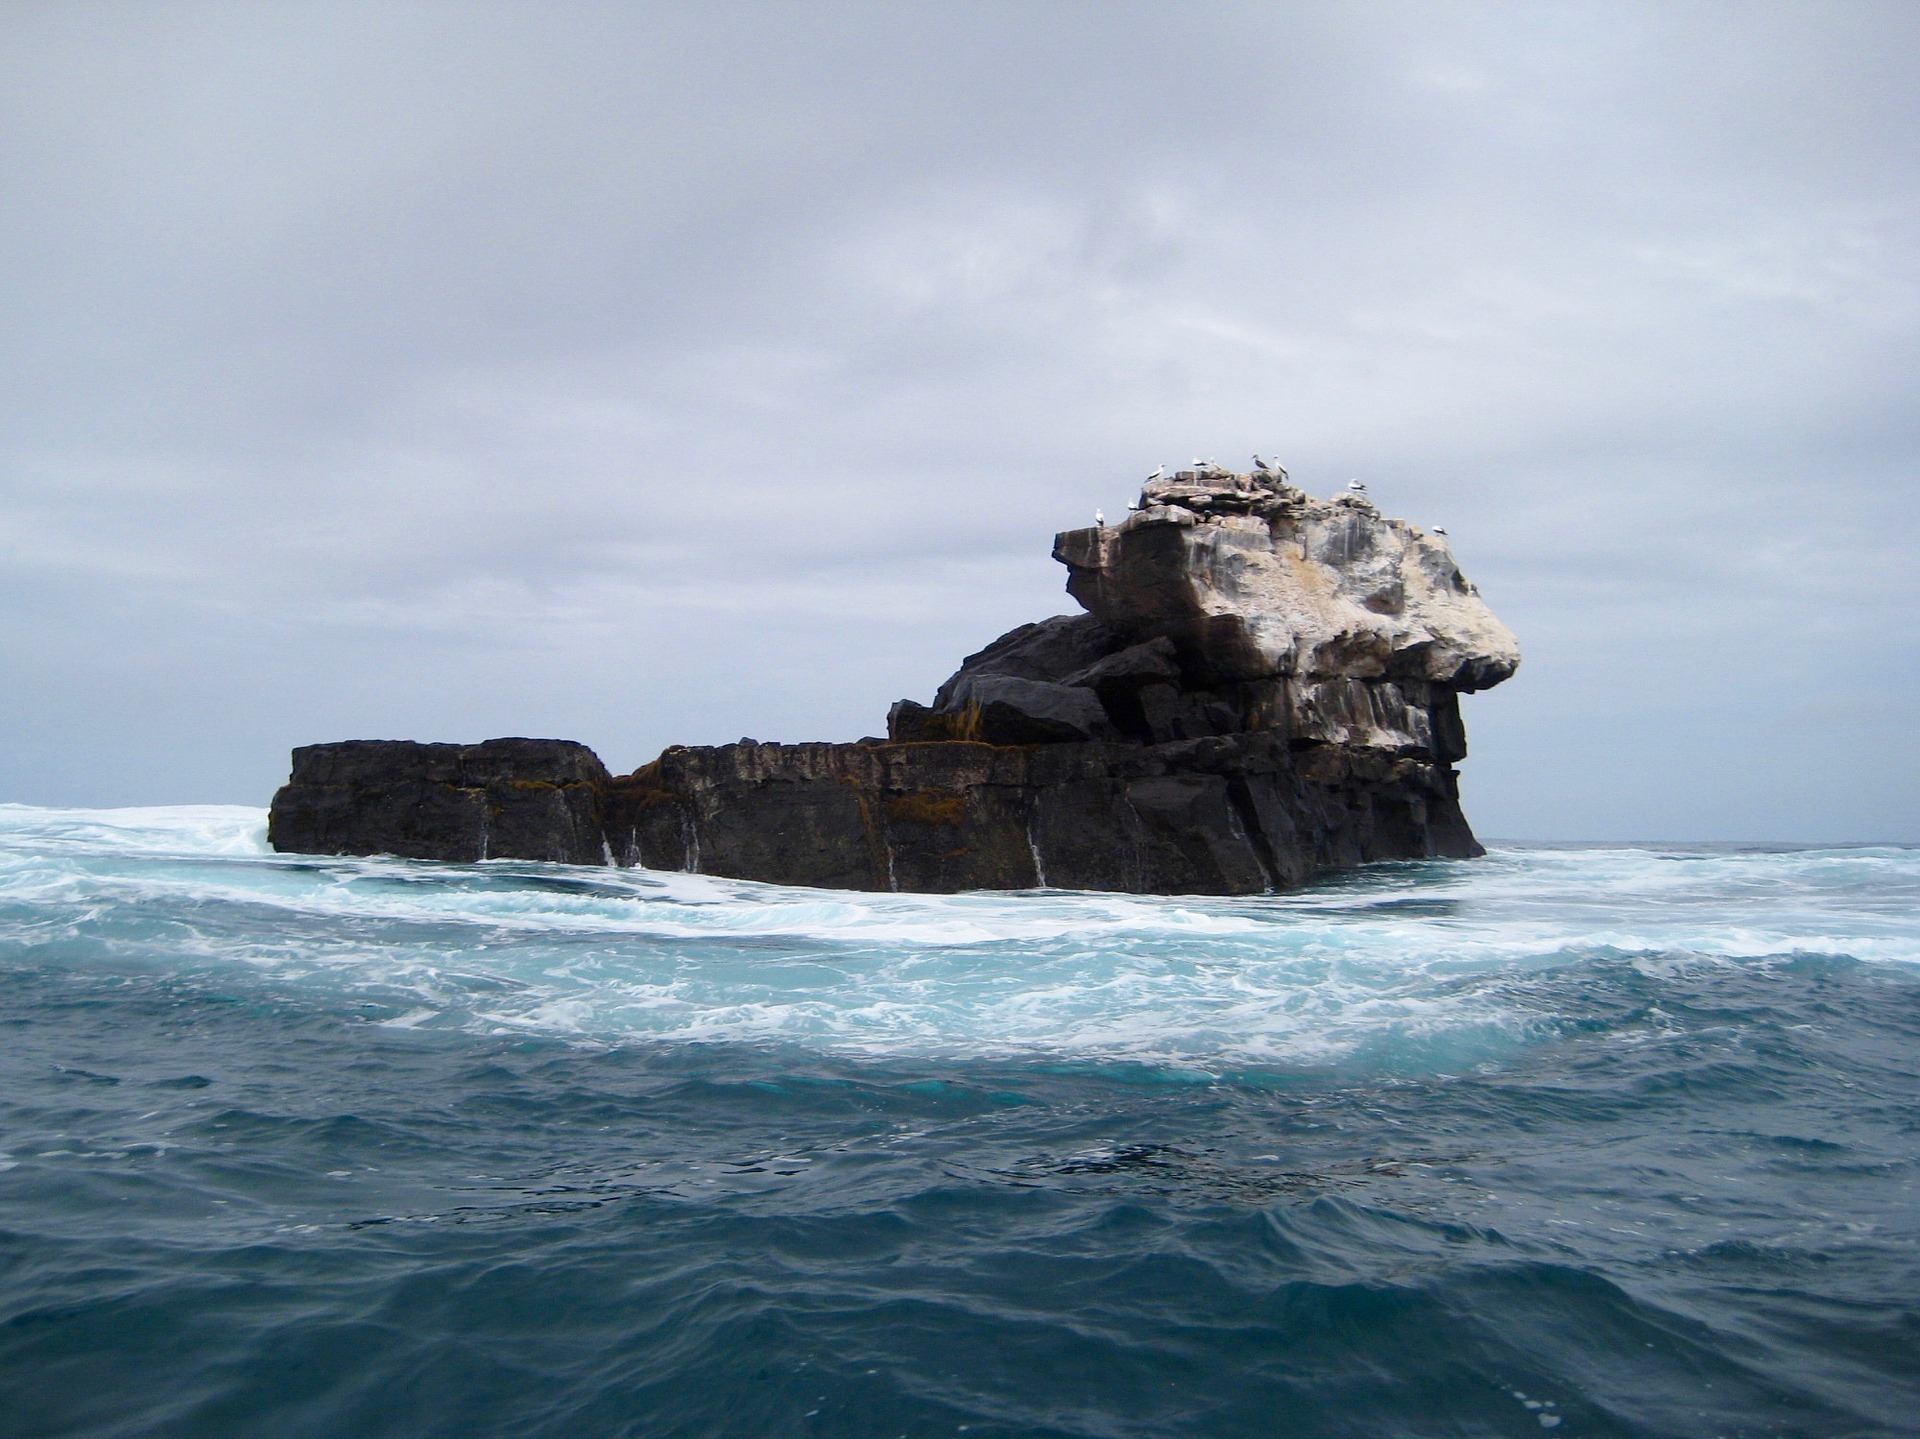 Galapagos Inseln - Felsen mitten im Meer wirken als gäbe es Irgendwo einen versunkenen Kontinent